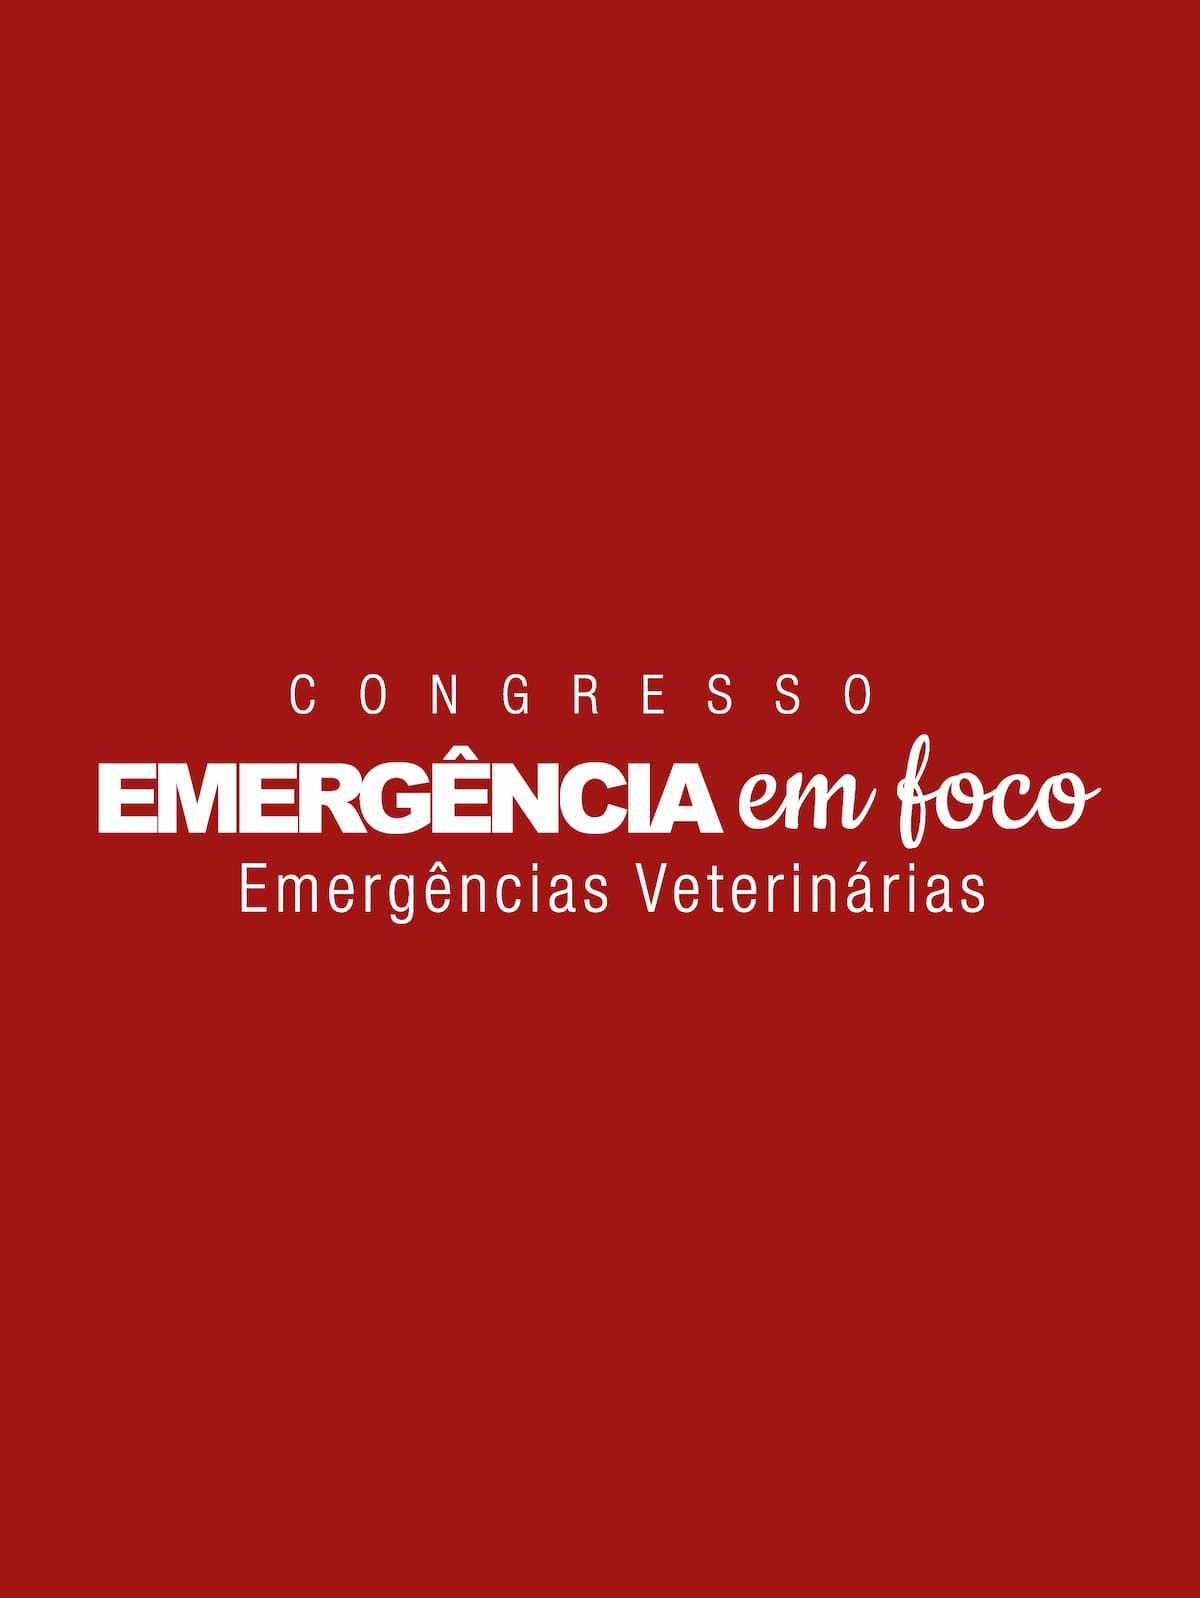 Congresso Emergência em Foco estudante